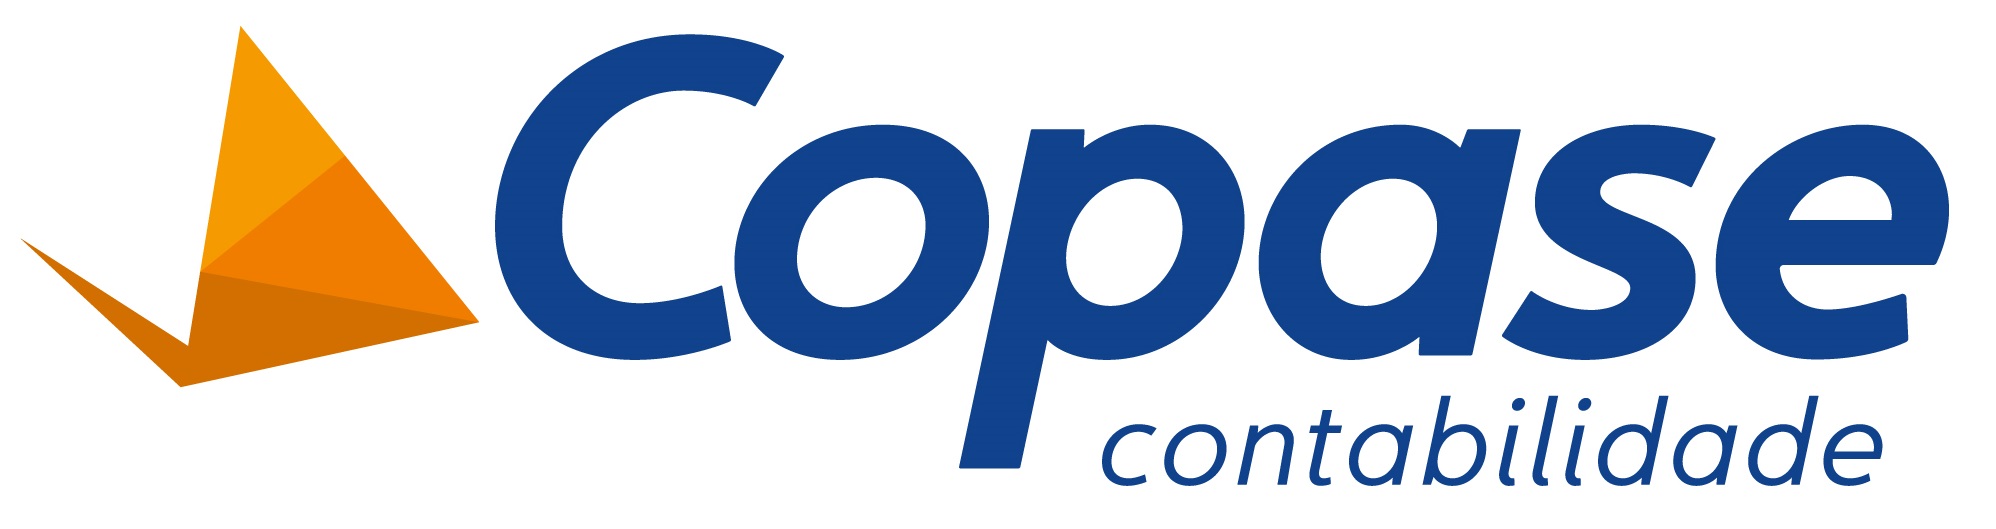 logo-horizontal Copaze